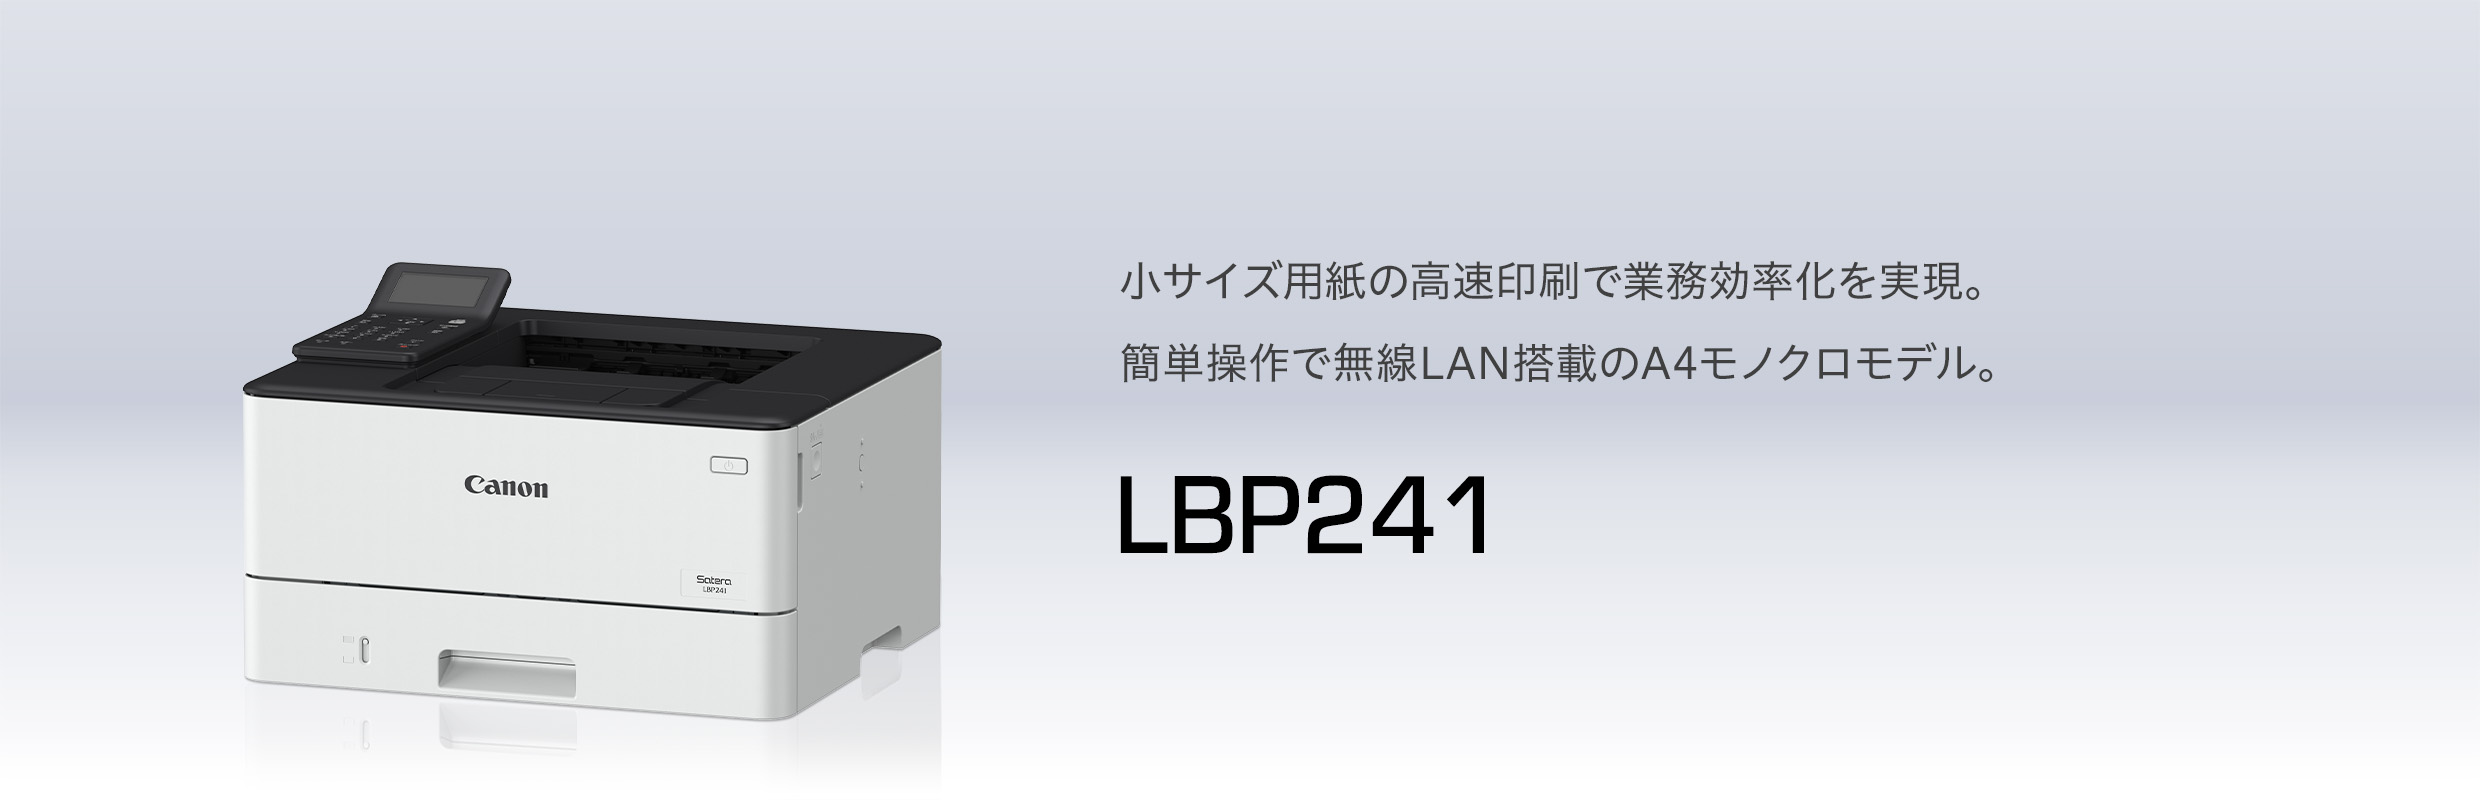 Canon Satera LBP221 レーザープリンター - PC/タブレット